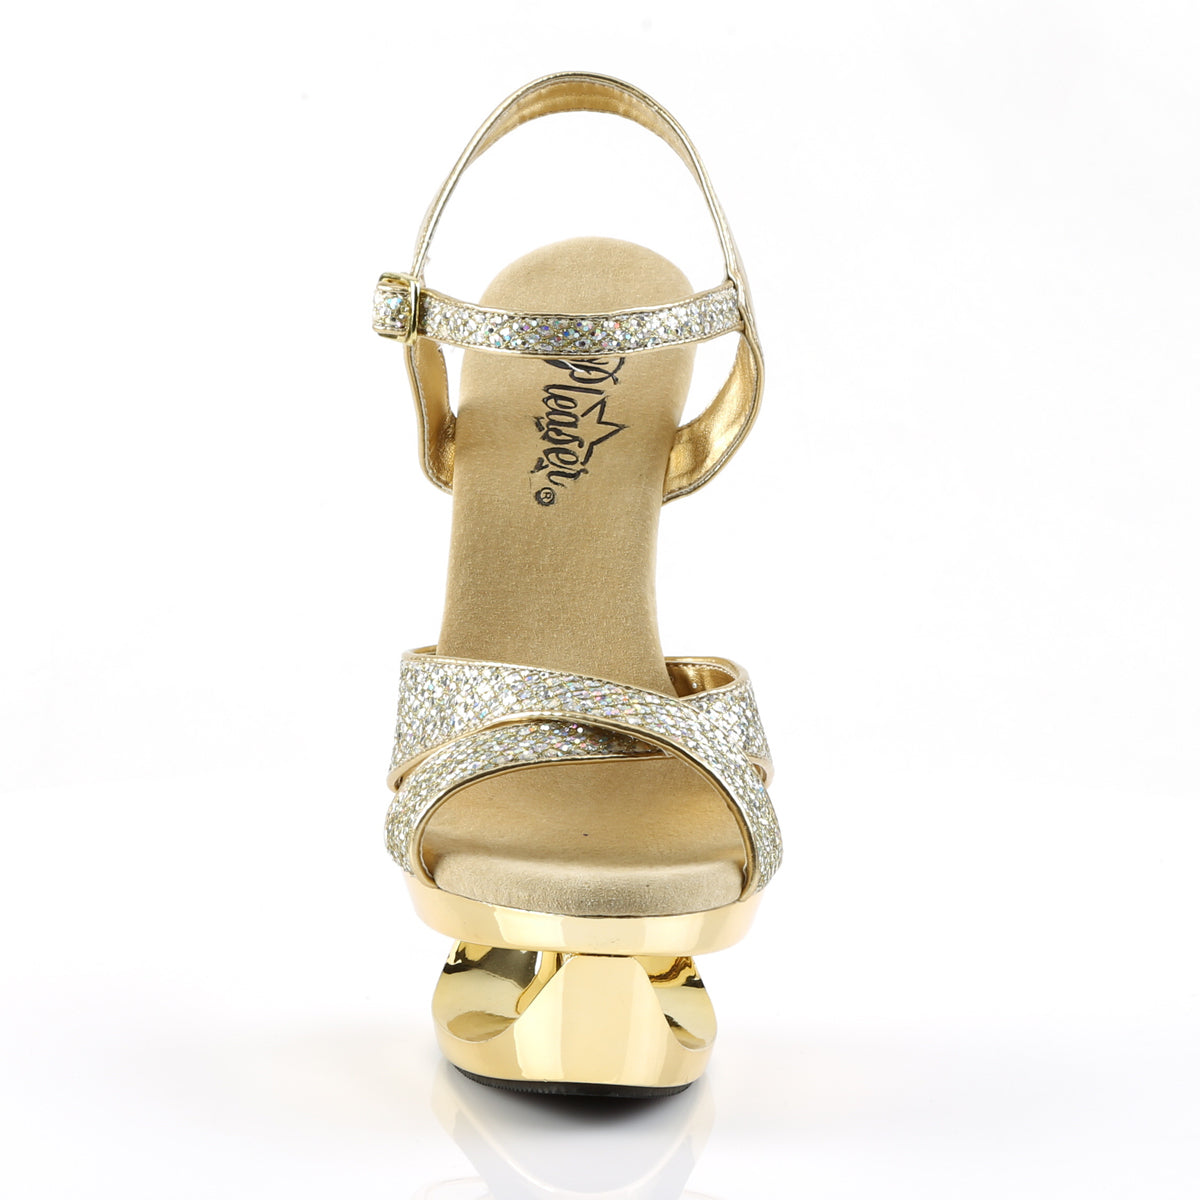 Pleaser Sandalias para mujer ECLIPSE-619g oro multi glitraje / oro cromo